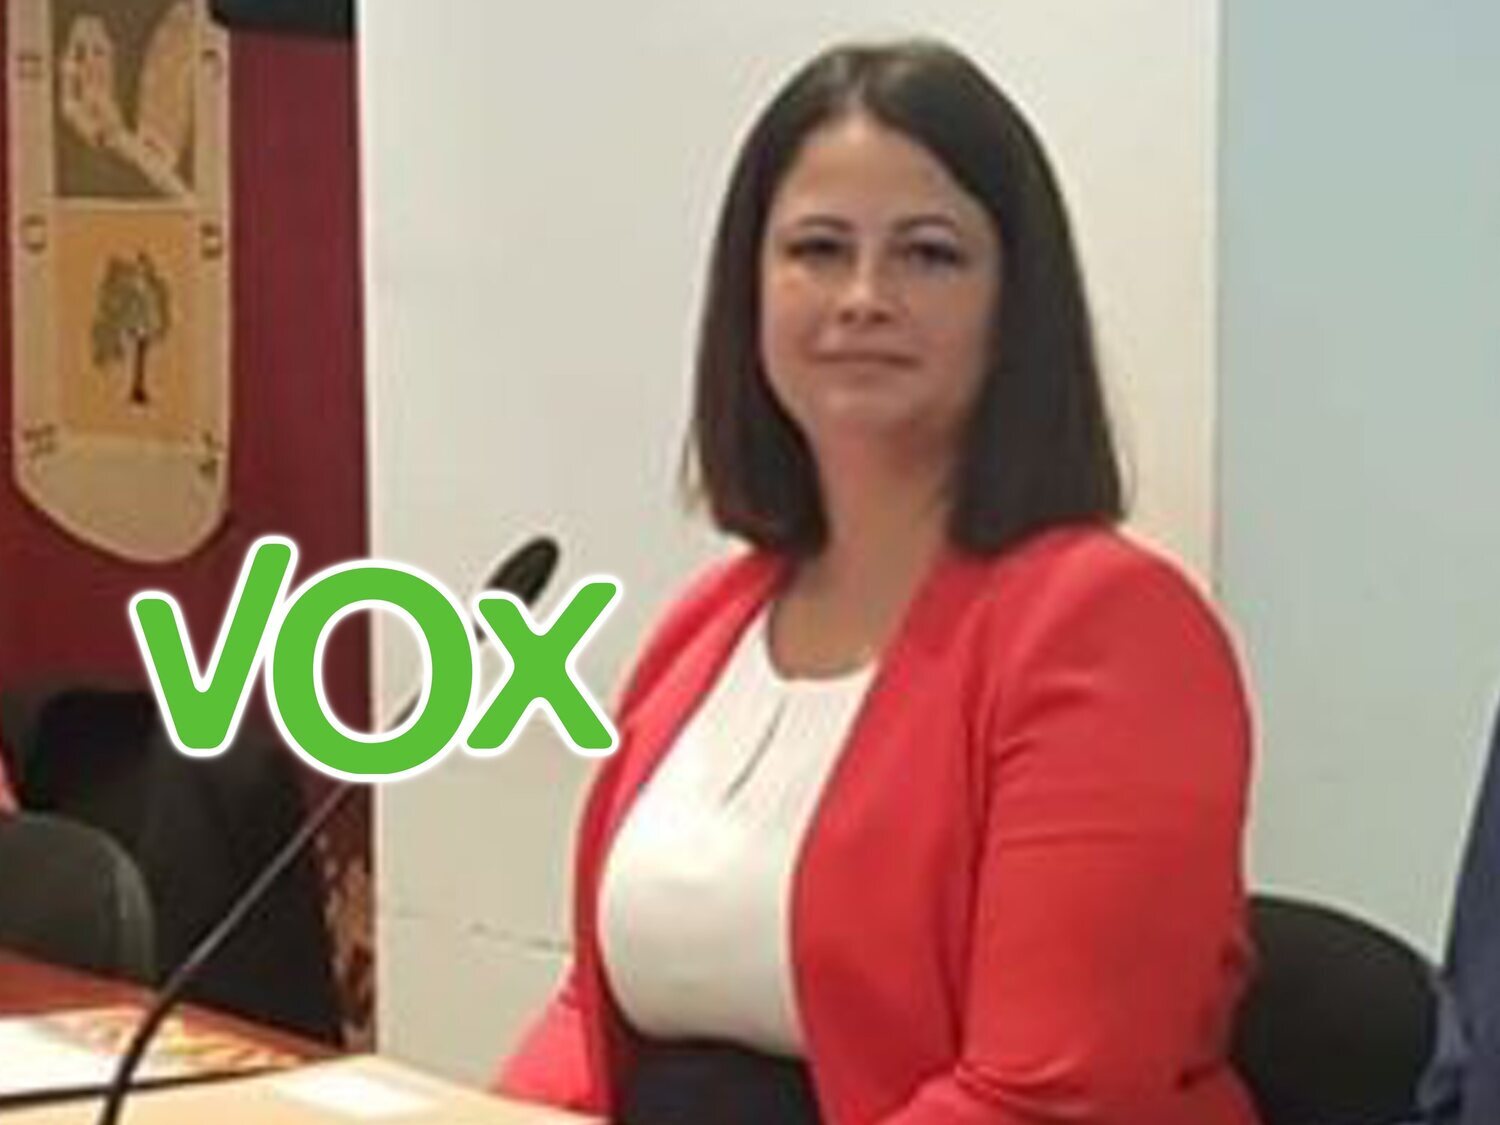 La portavoz de VOX en Bormujos abandona el partido tras anunciar su boda con una mujer migrante